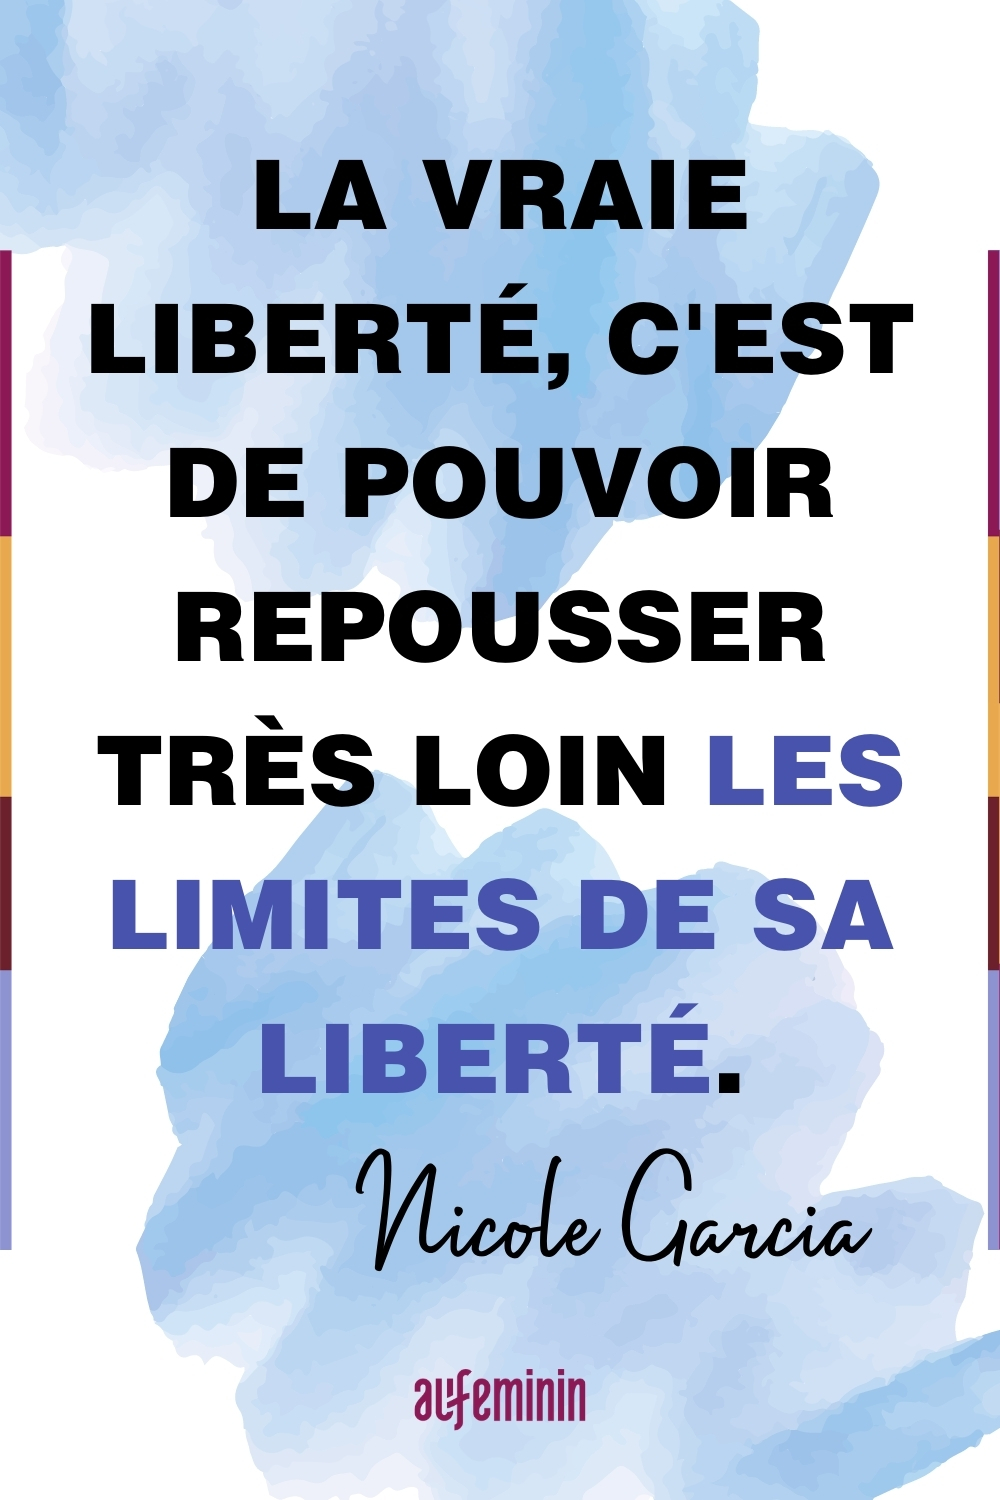 Citations Liberte 60 Phrases Inspirantes Pour Vous Sentir Libre